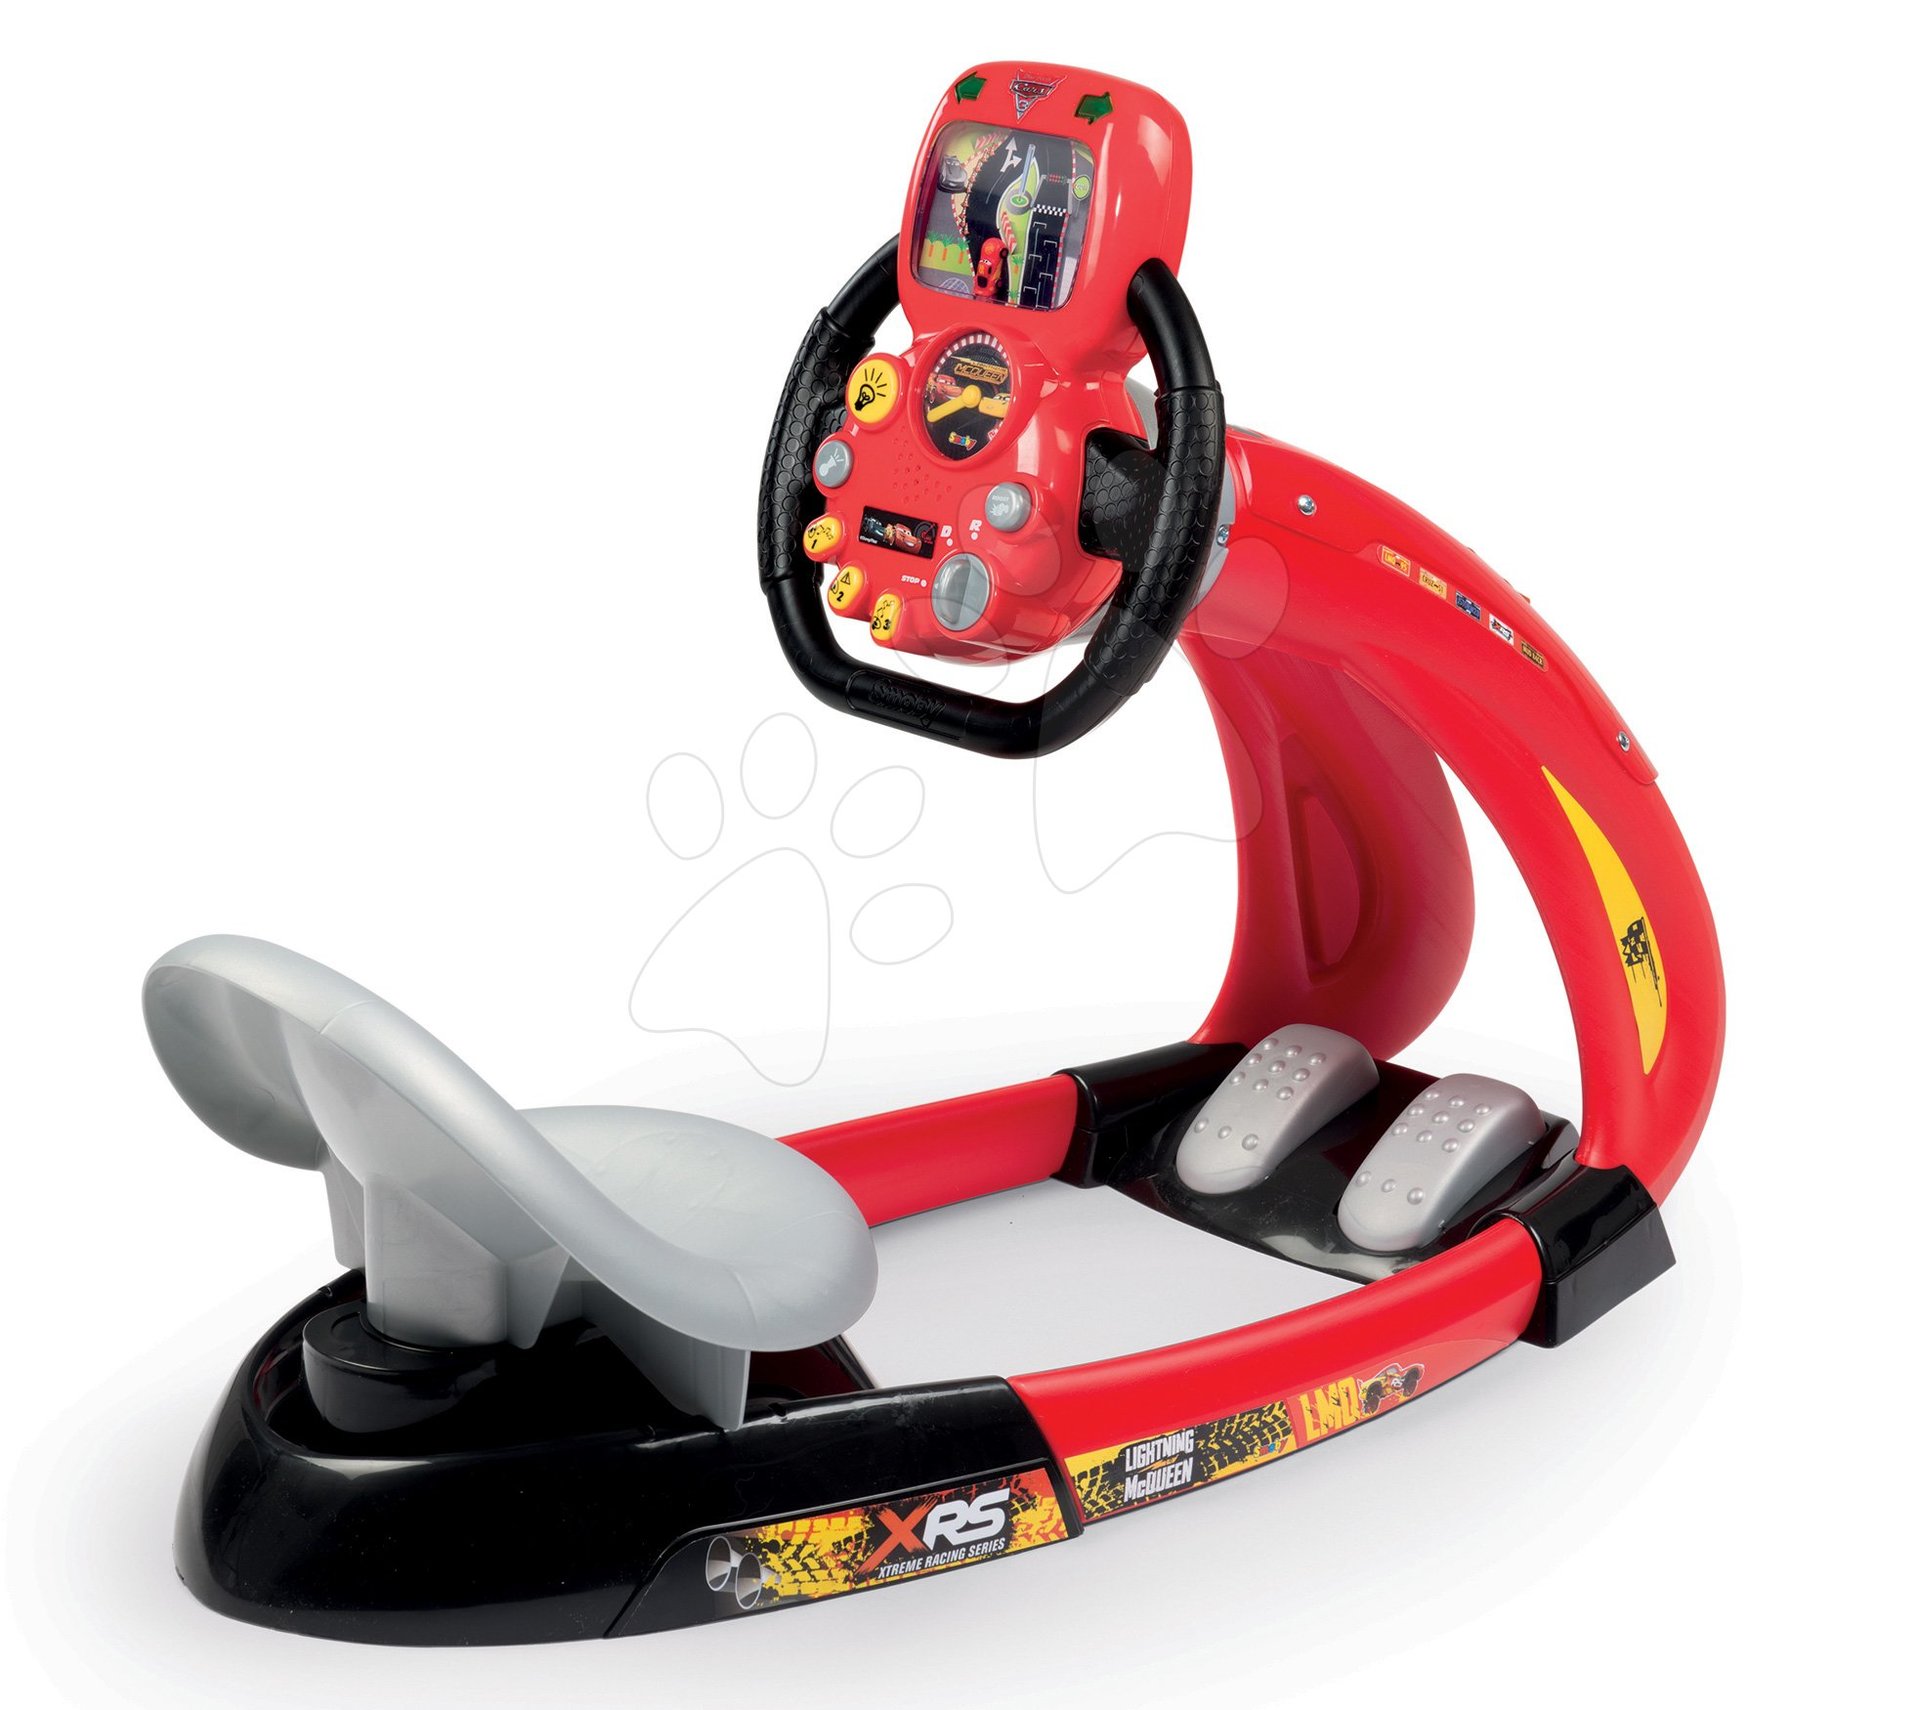 Trenažér pro děti - Trenažér Flash McQueen Cars XRS Smoby elektronický se závodním simulátorem a držákem smartphonu